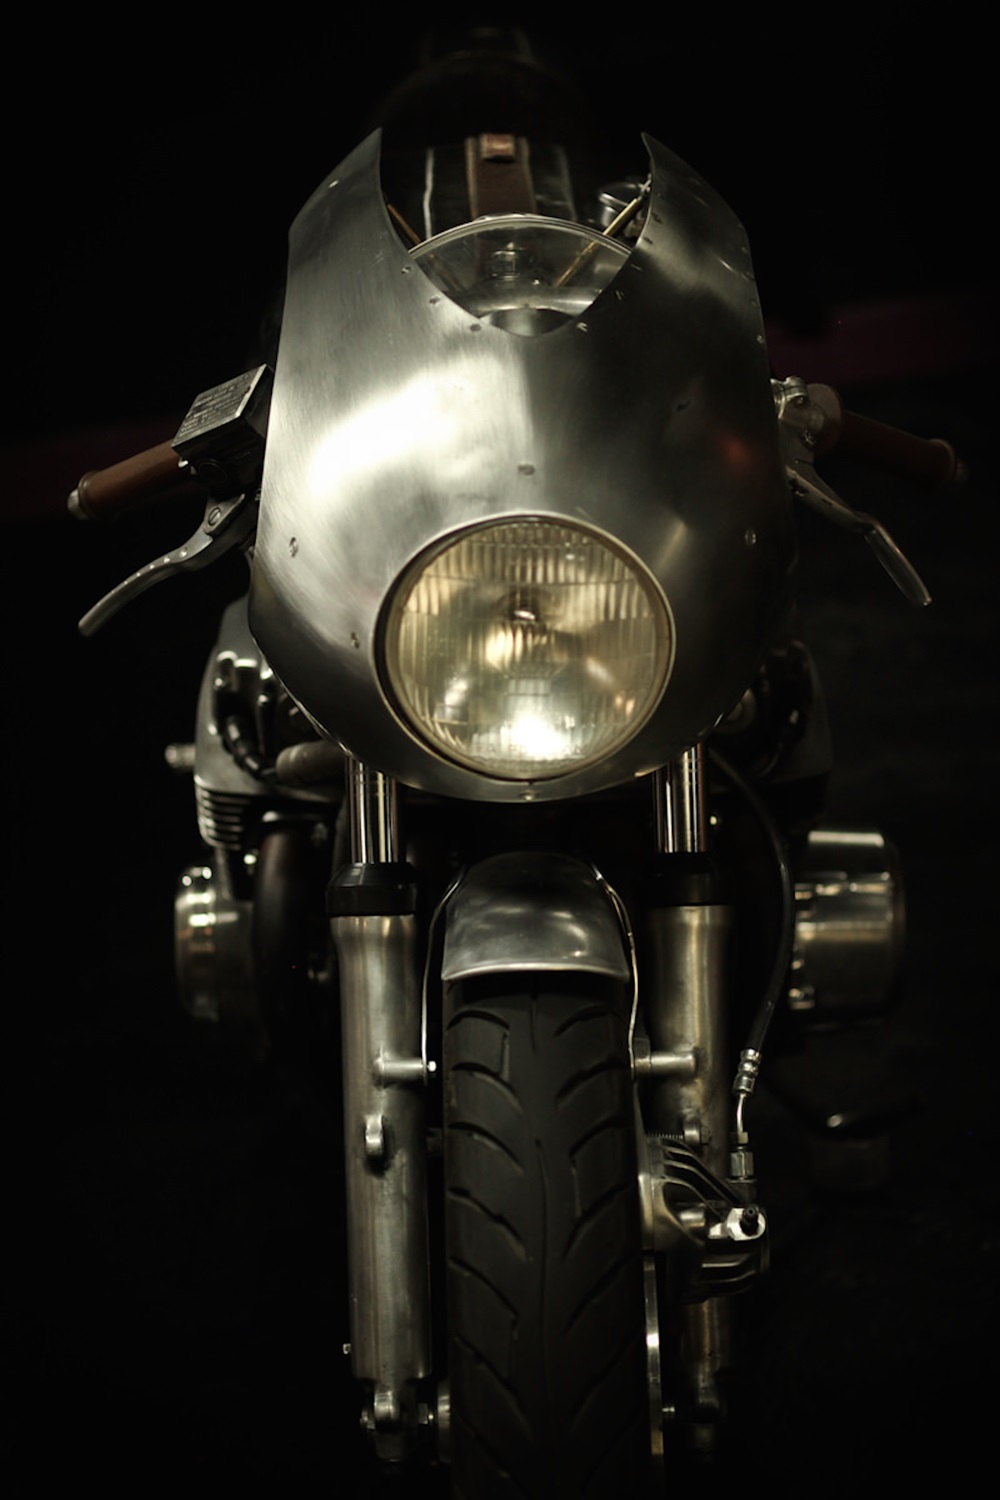 Кафе рейсер Honda CB750 Холодная Война / Cold War - мотоцикл Райана Рейнольдса